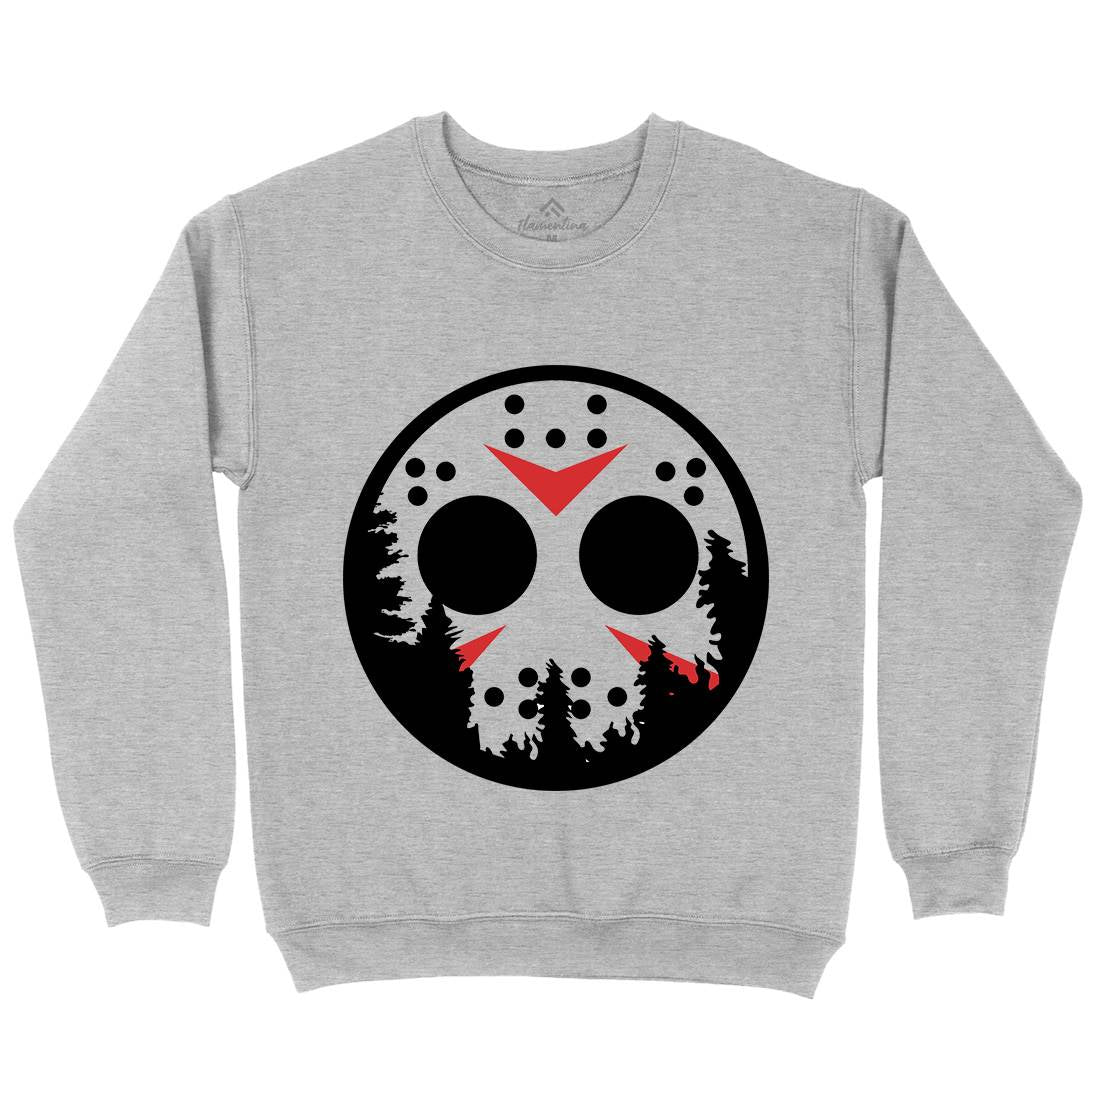 Moon Kids Crew Neck Sweatshirt Horror B054